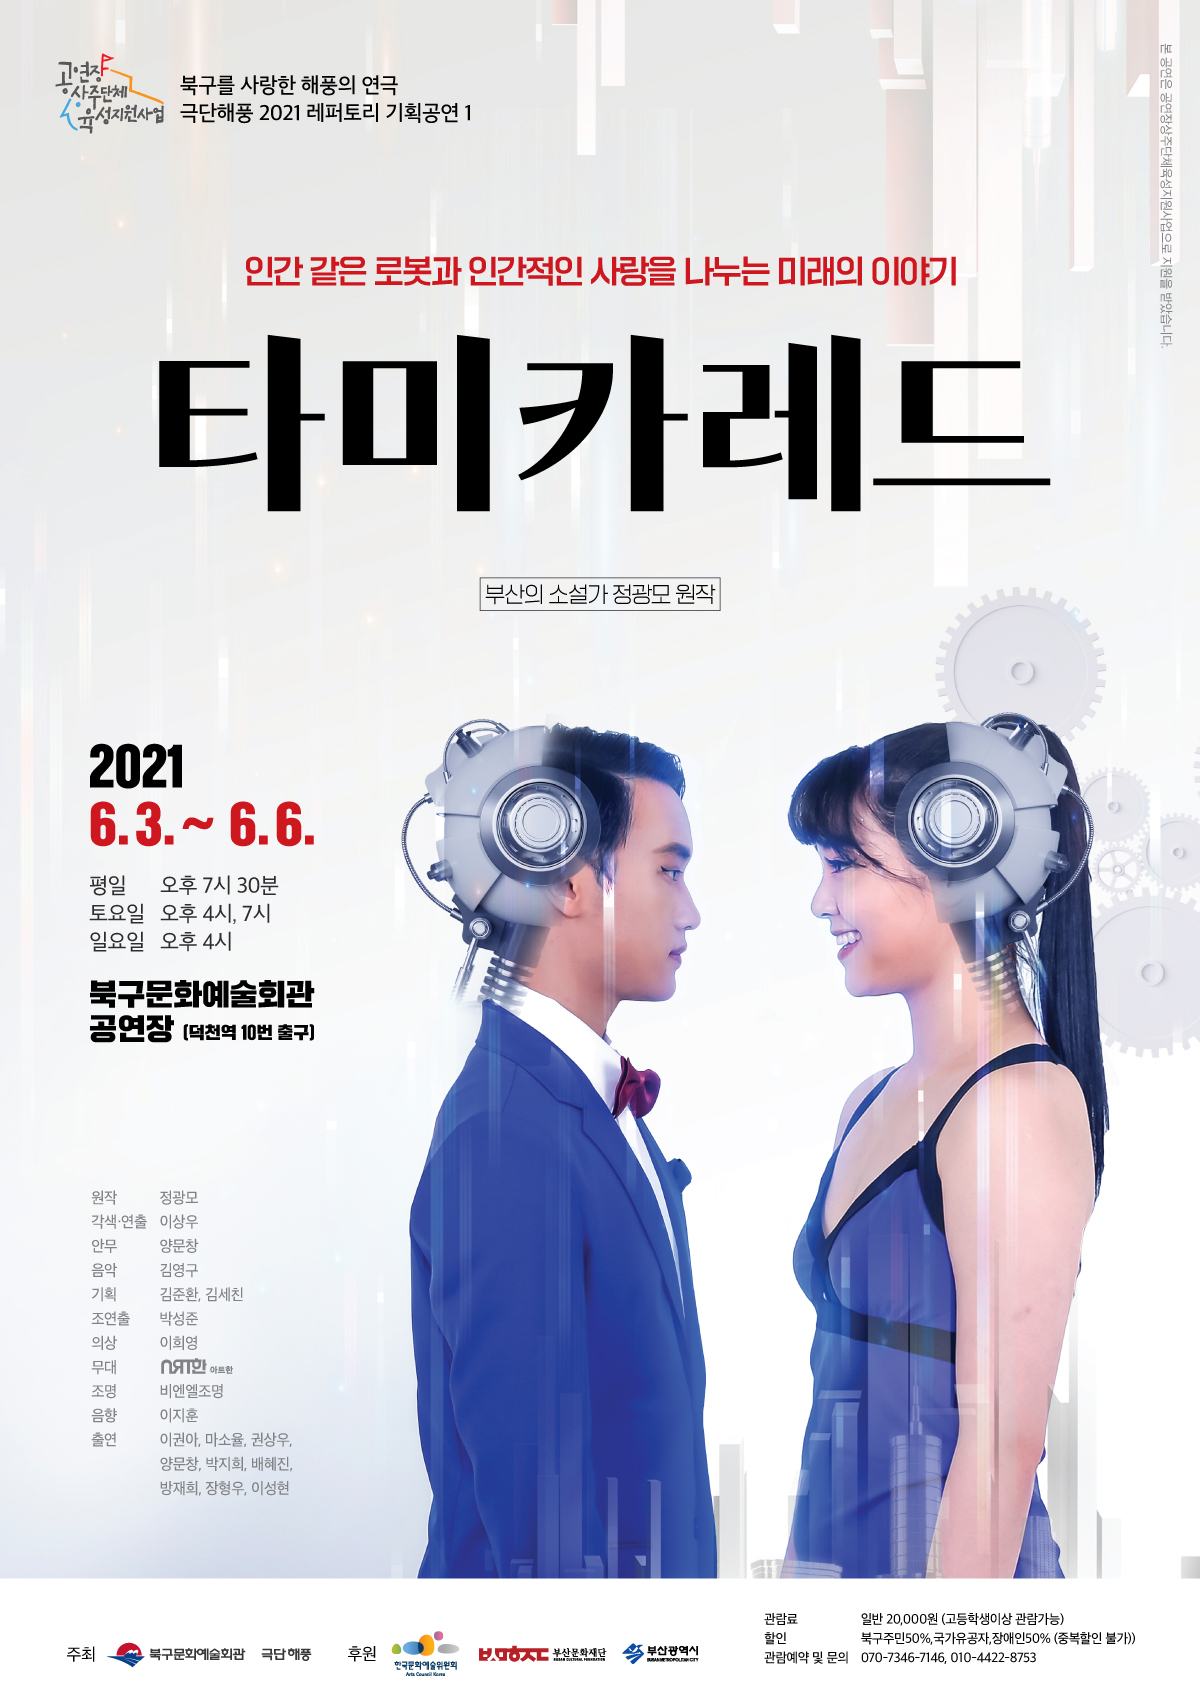 2021년 상주단체 육성사업 기획공연 타미카레드 포스터